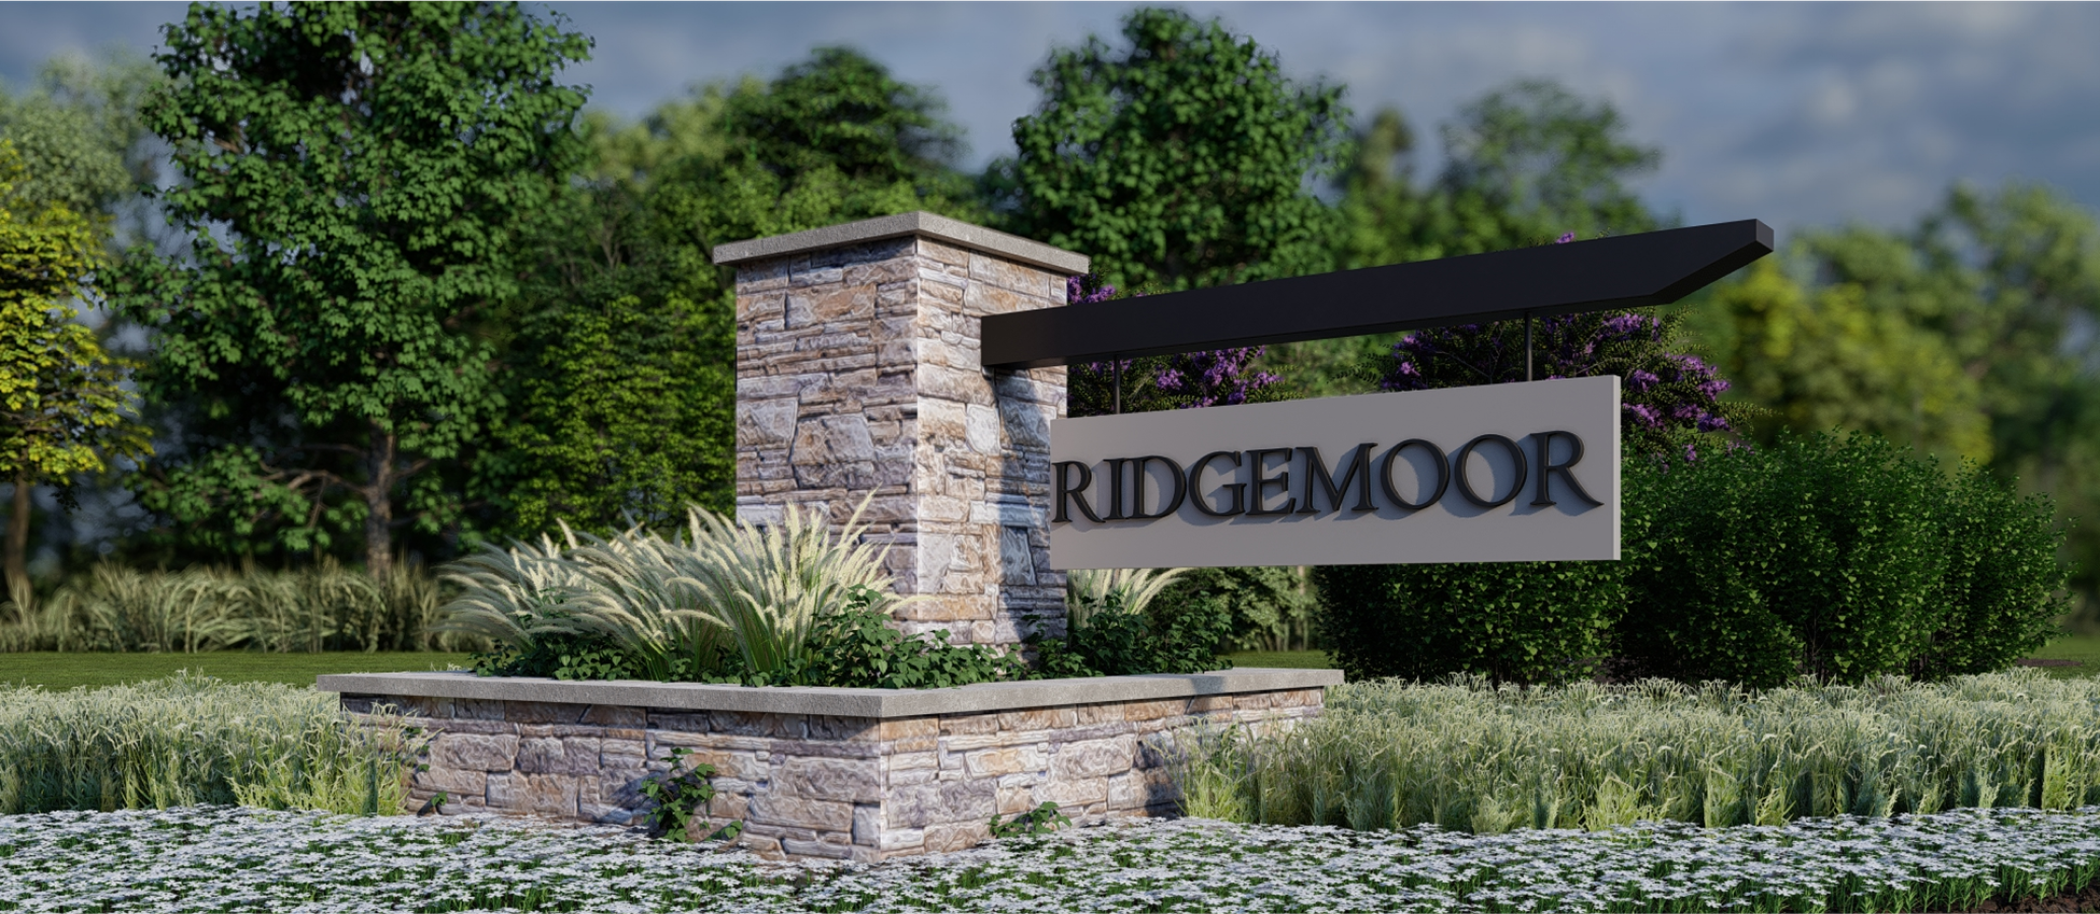 Ridgemoor community monument